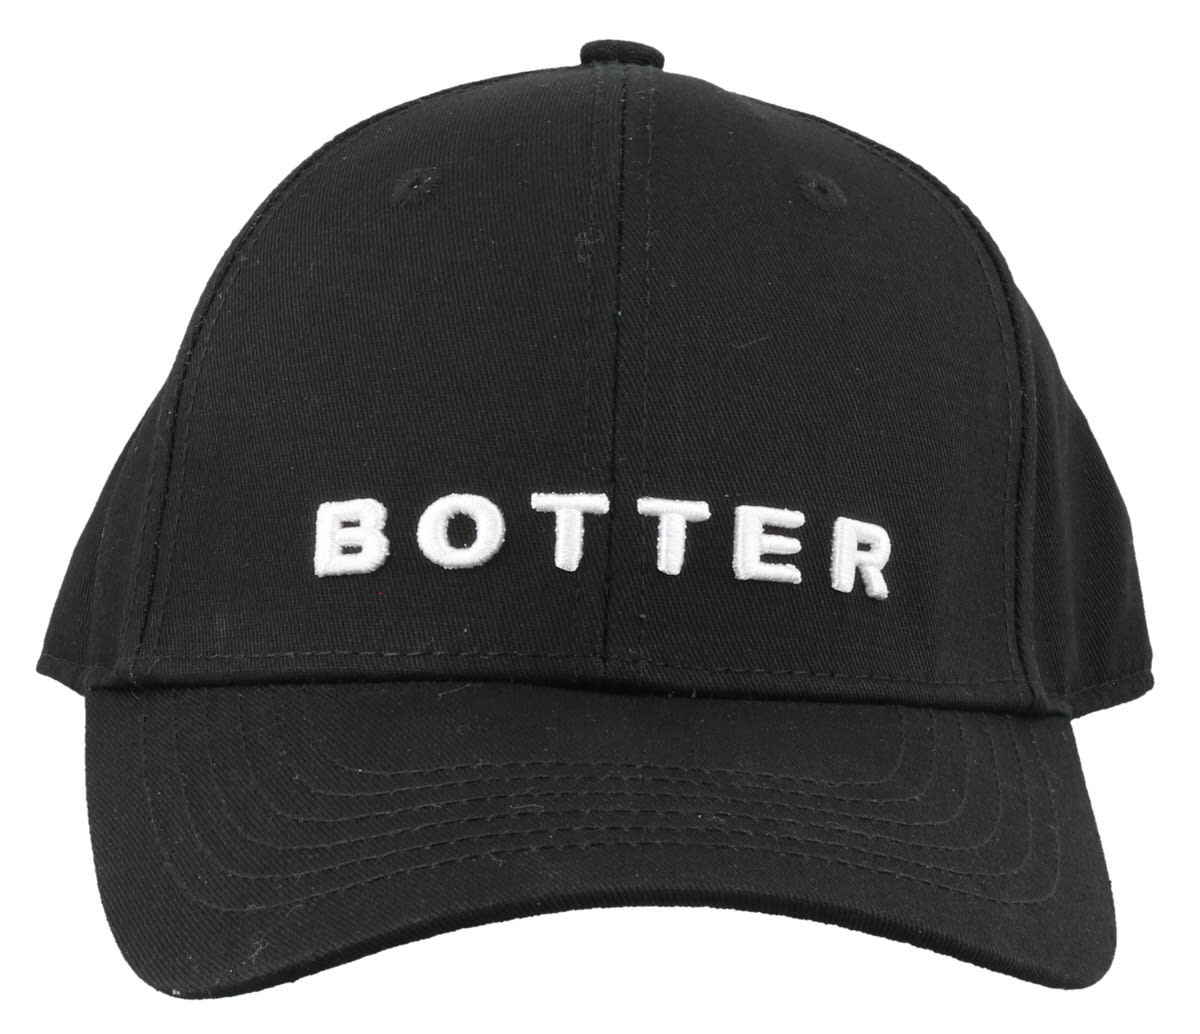 BOTTER BASEBALL CAP,11249925